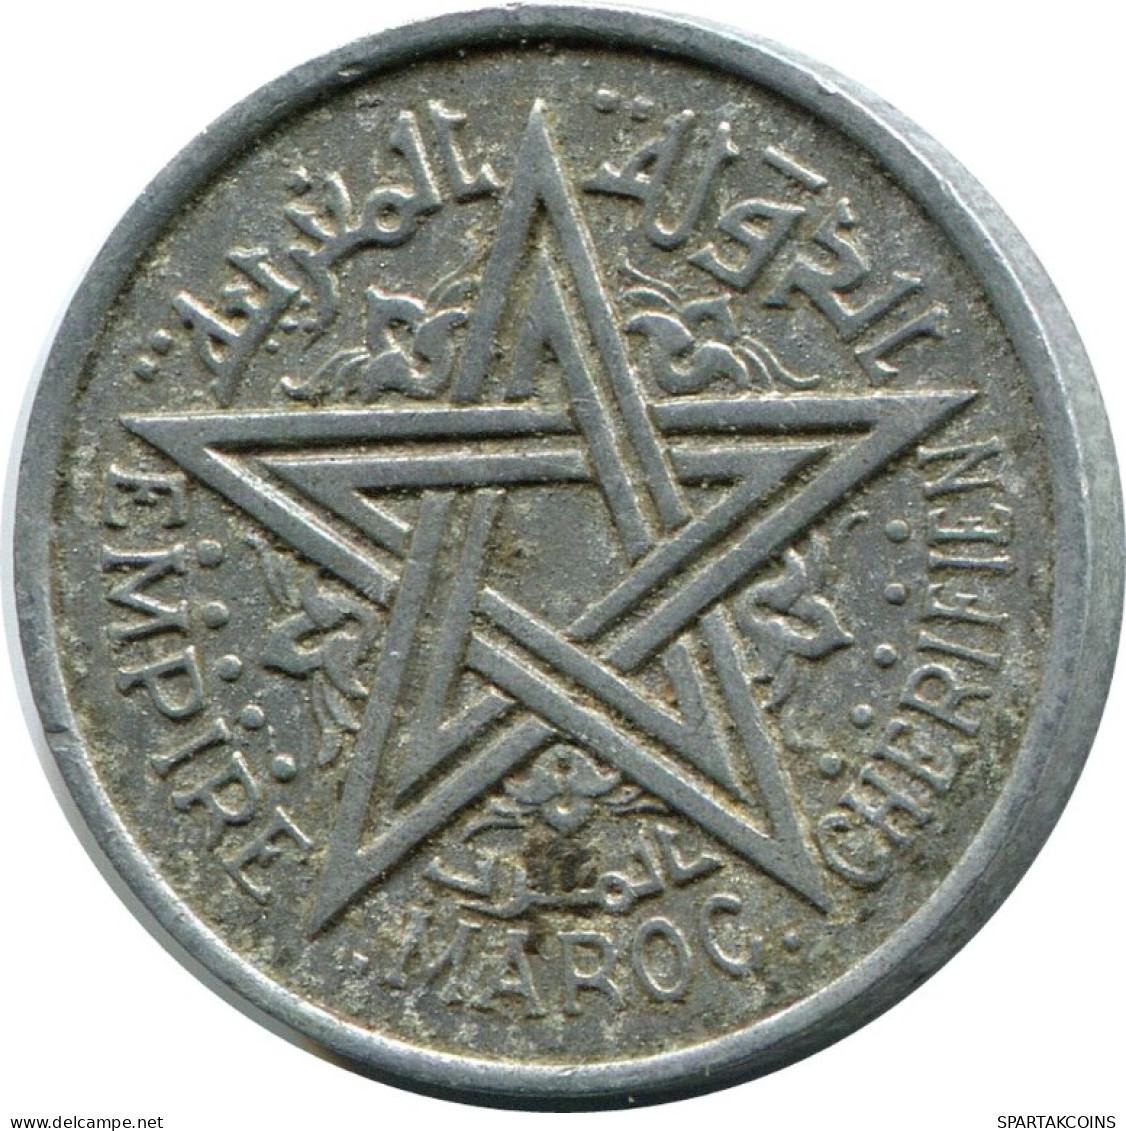 1 FRANC 1951 MOROCCO Islamic Coin #AH695.3.U.A - Maroc